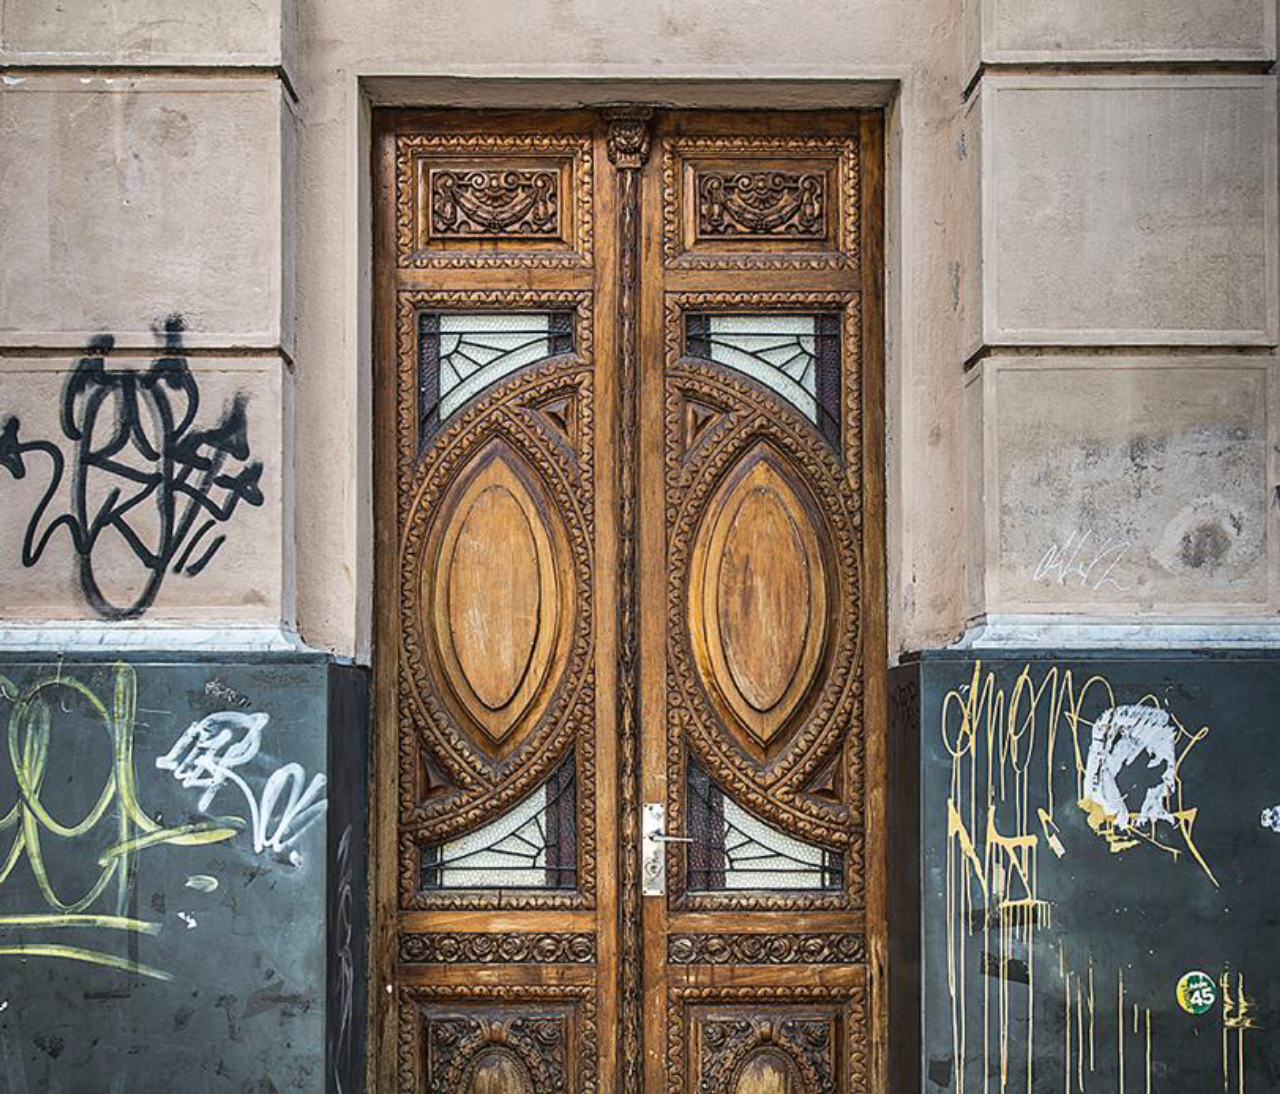 A porta do prédio onde funcionou a Livrarias Ghignone segue o movimento art nouveau, de linhas sinuosas e assimétricas